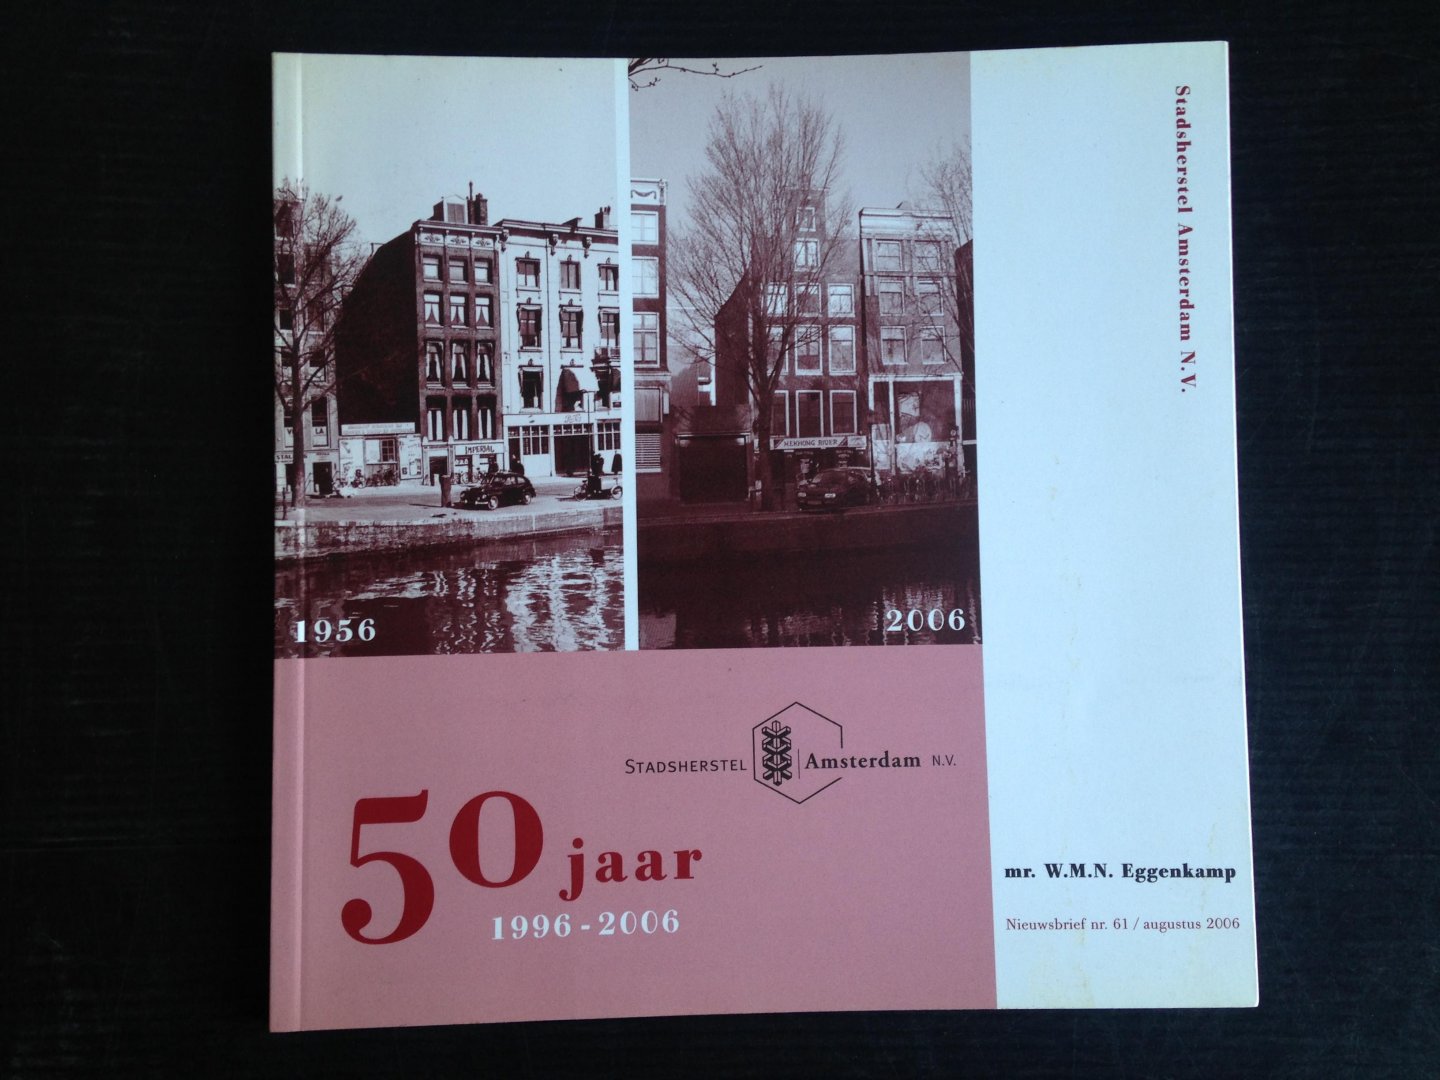  - 50 jaar Jubileum Stadsherstel 1996-2006, Nieuwsbrief  61